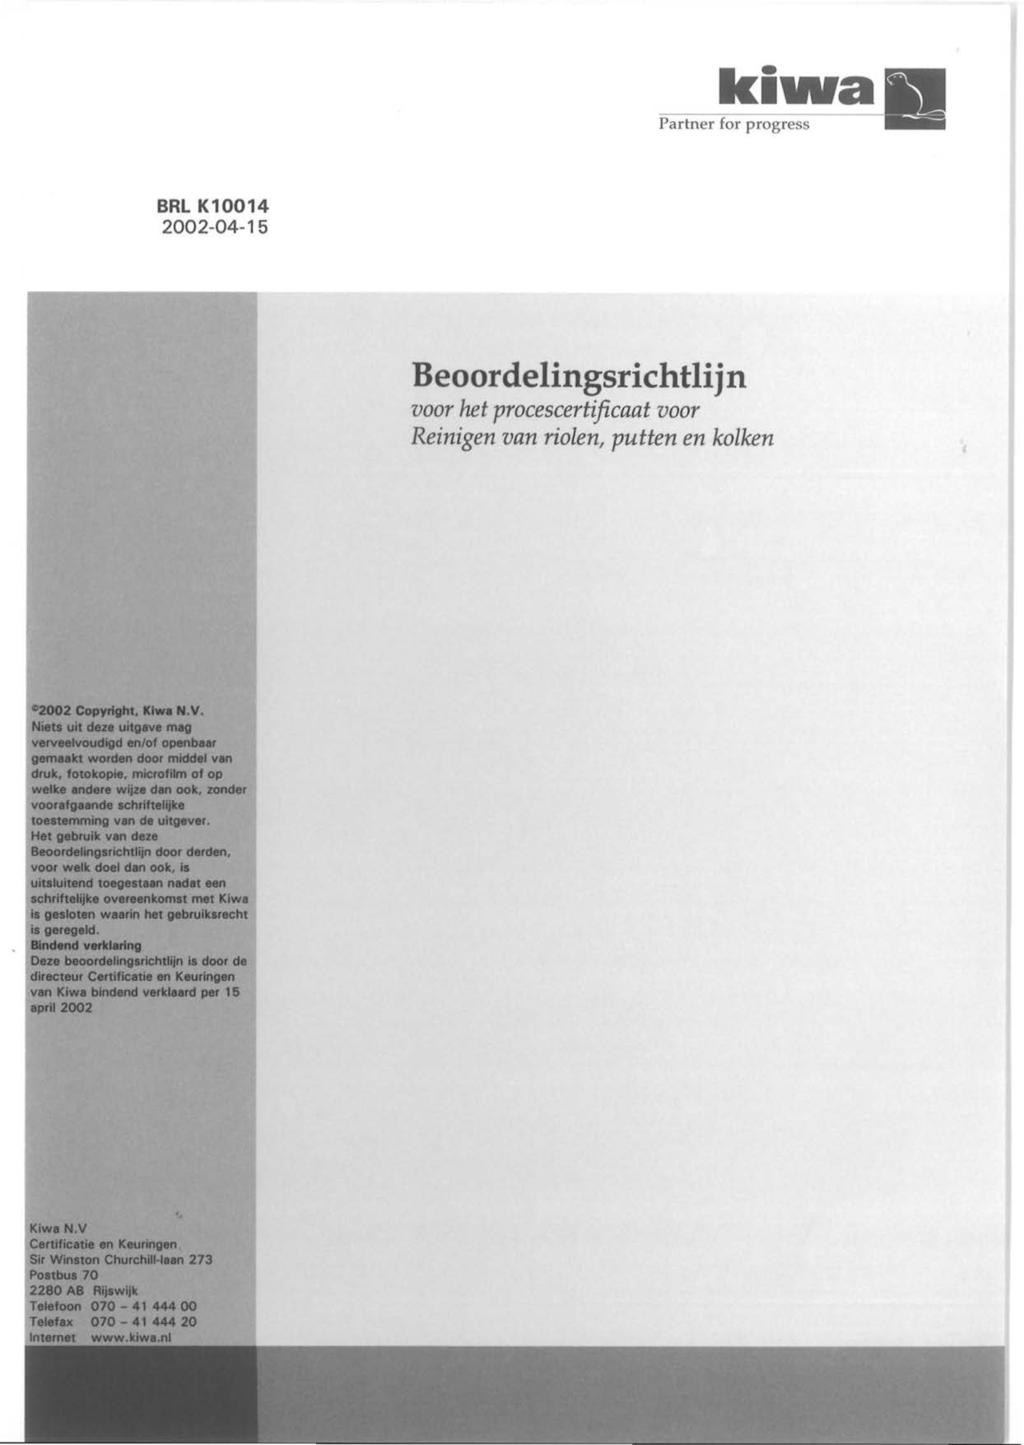 ki111ra Partner for progress BRL K10014 2002-04-15 Beoordelingsrichtlijn voor het procescertificaat voor Reinigen van riolen, putten en kolken 02002 Copyright, Klwe N.V.